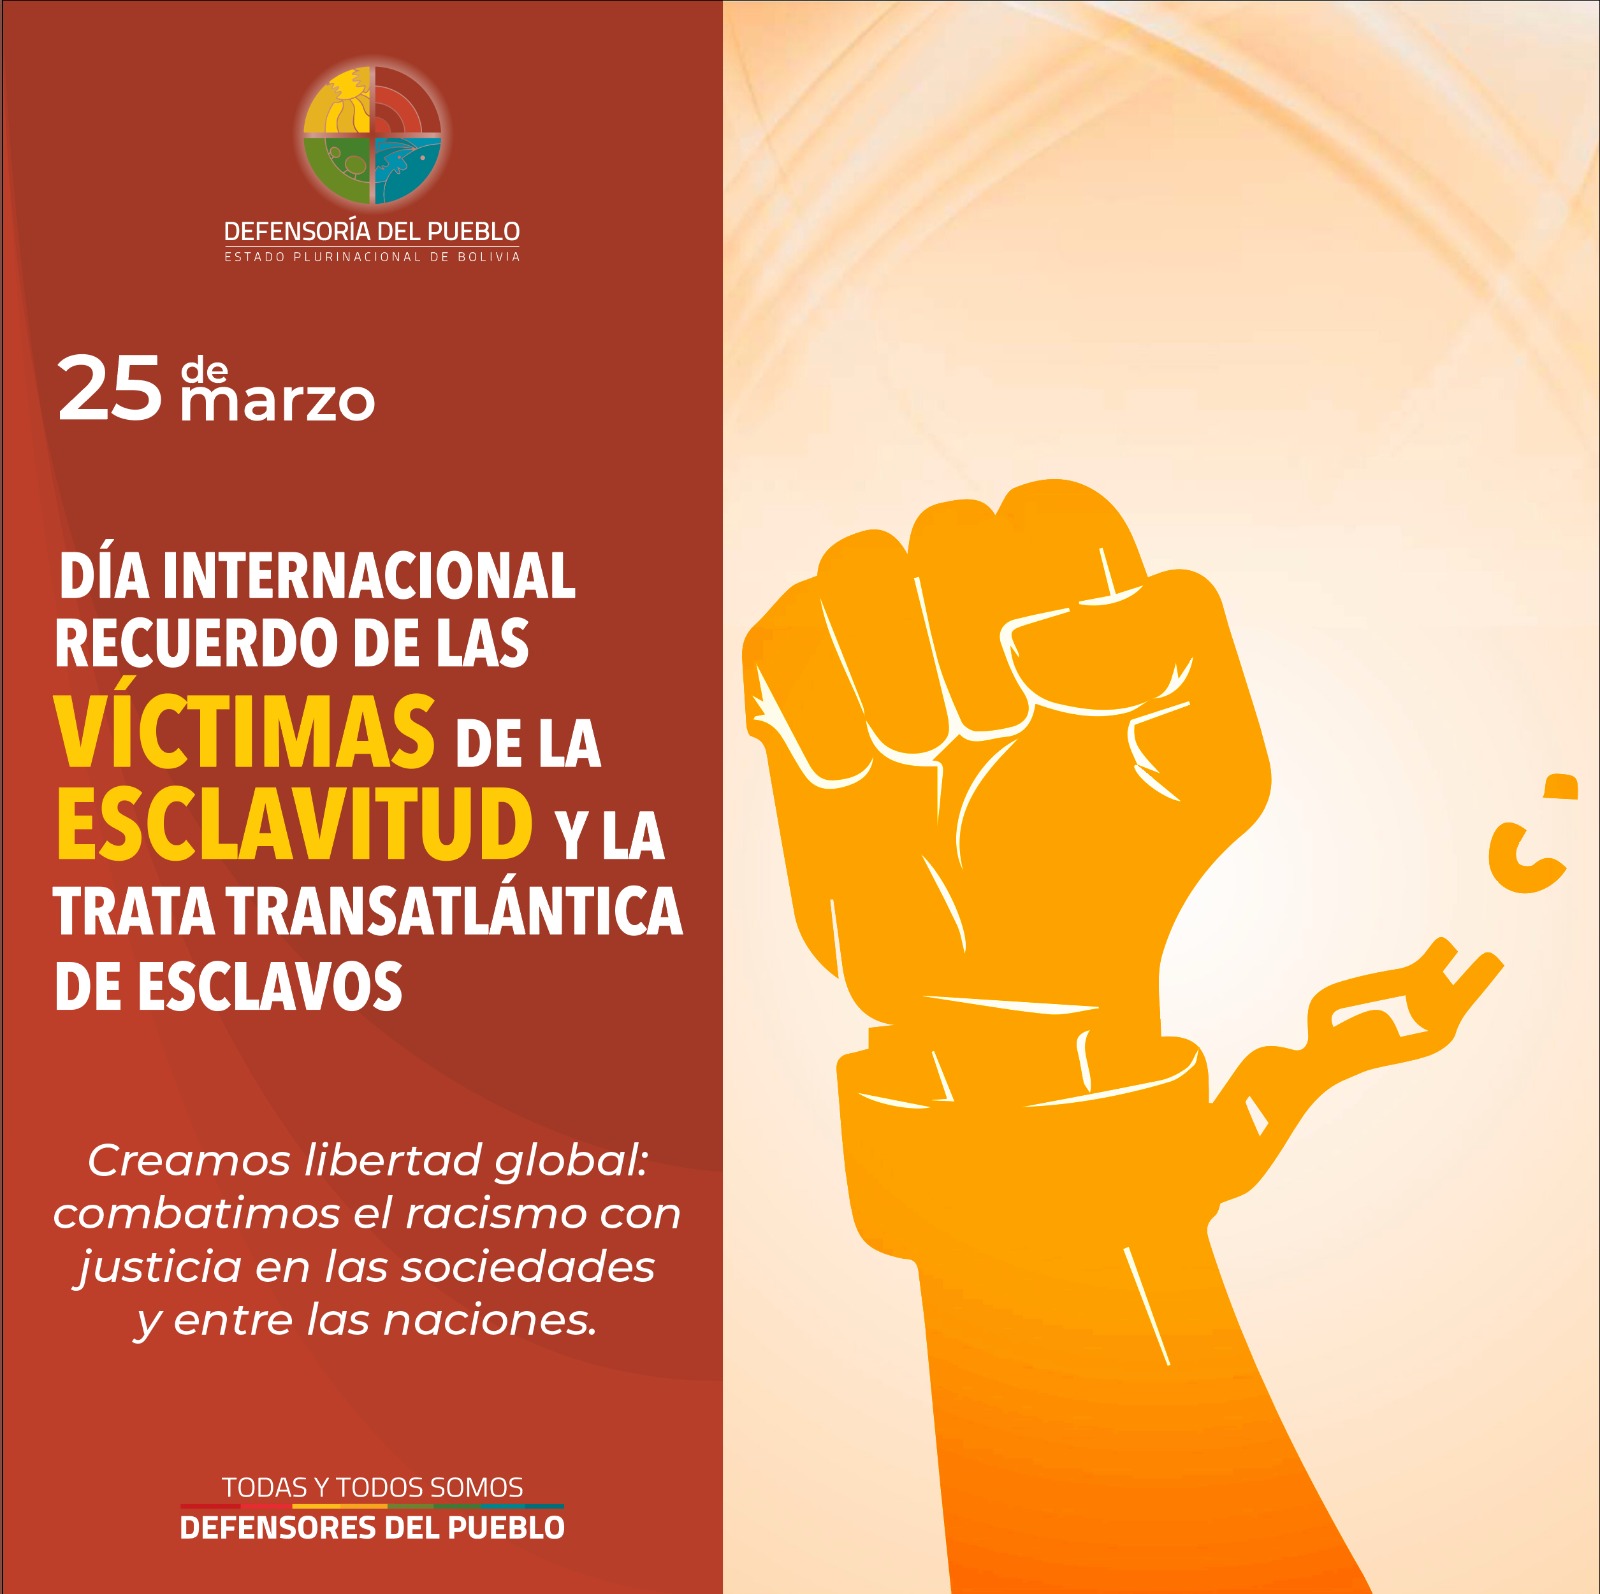 Defensor del Pueblo ratifica su compromiso con los pueblos en el Día Internacional de Recuerdo de las Víctimas de la Esclavitud